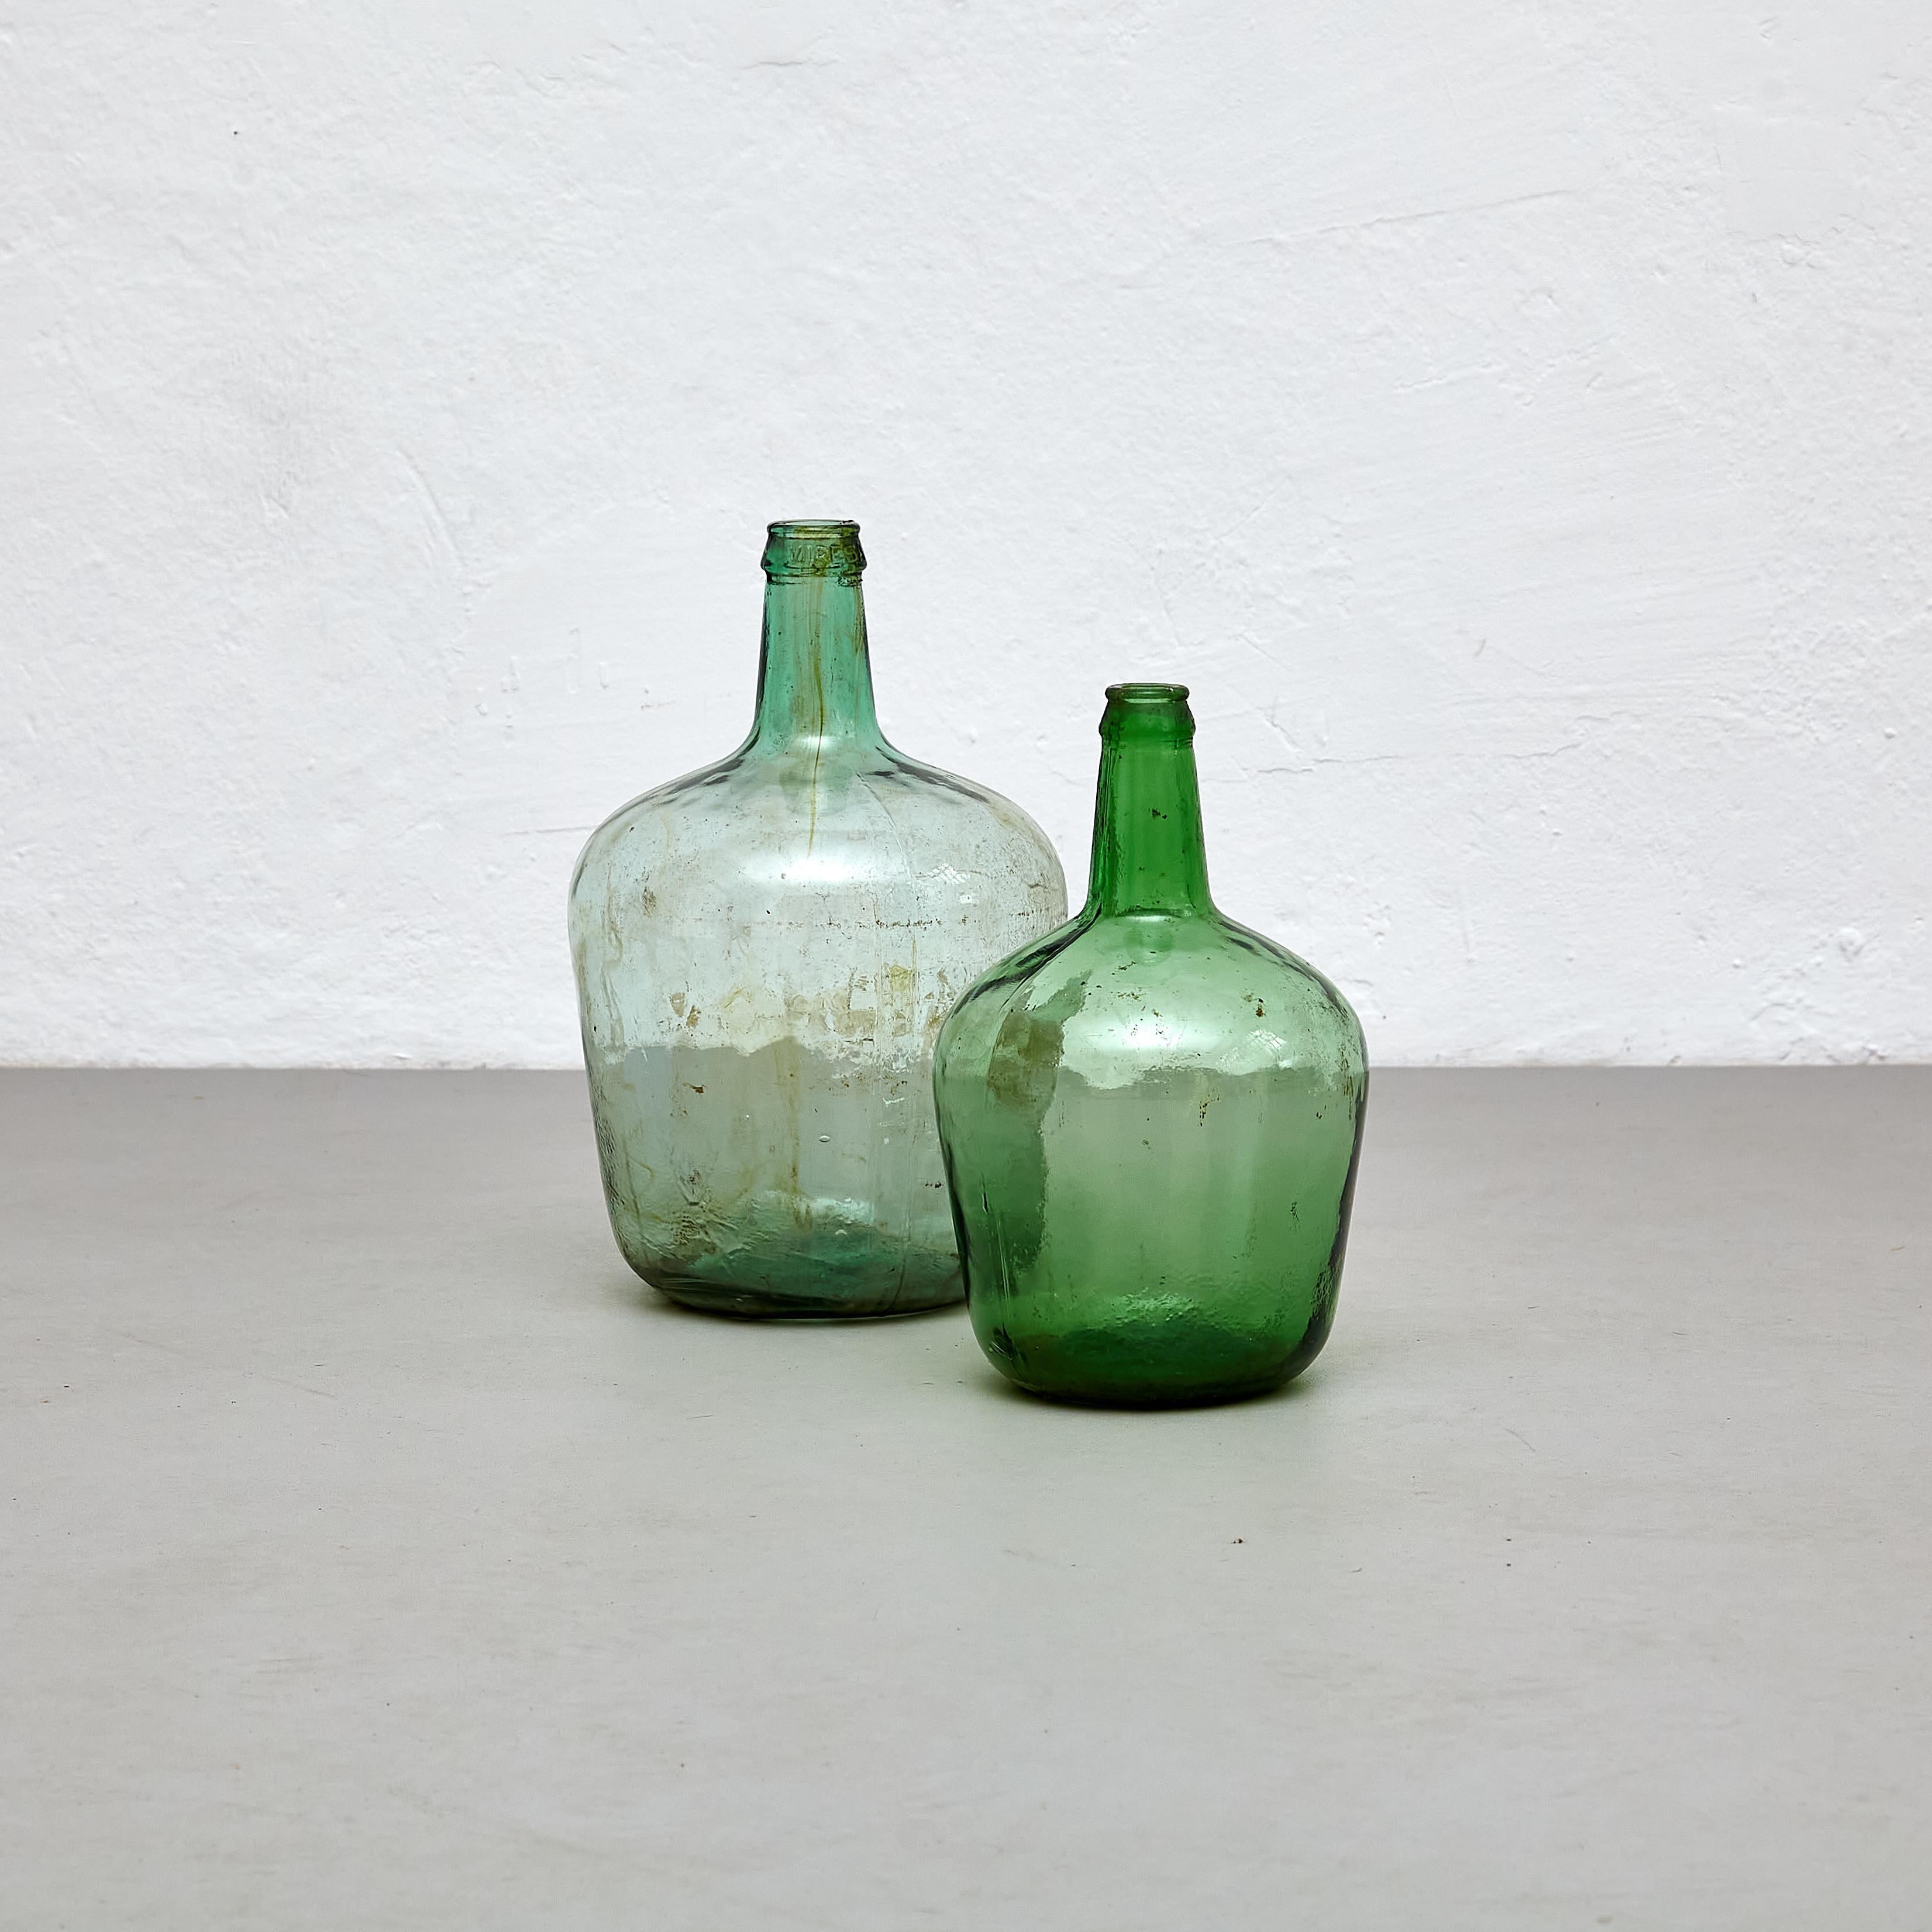 Ensemble de 2 vases-bouteilles en verre espagnols du début du 20e siècle.

Fabriqué en Espagne, vers 1960.

Dimensions : 
L- Diam. 23,5 cm x H 36,5 cm.
M- Diam. 19 cm x H 31 cm.

En état d'origine, avec une usure mineure conforme à l'âge et à